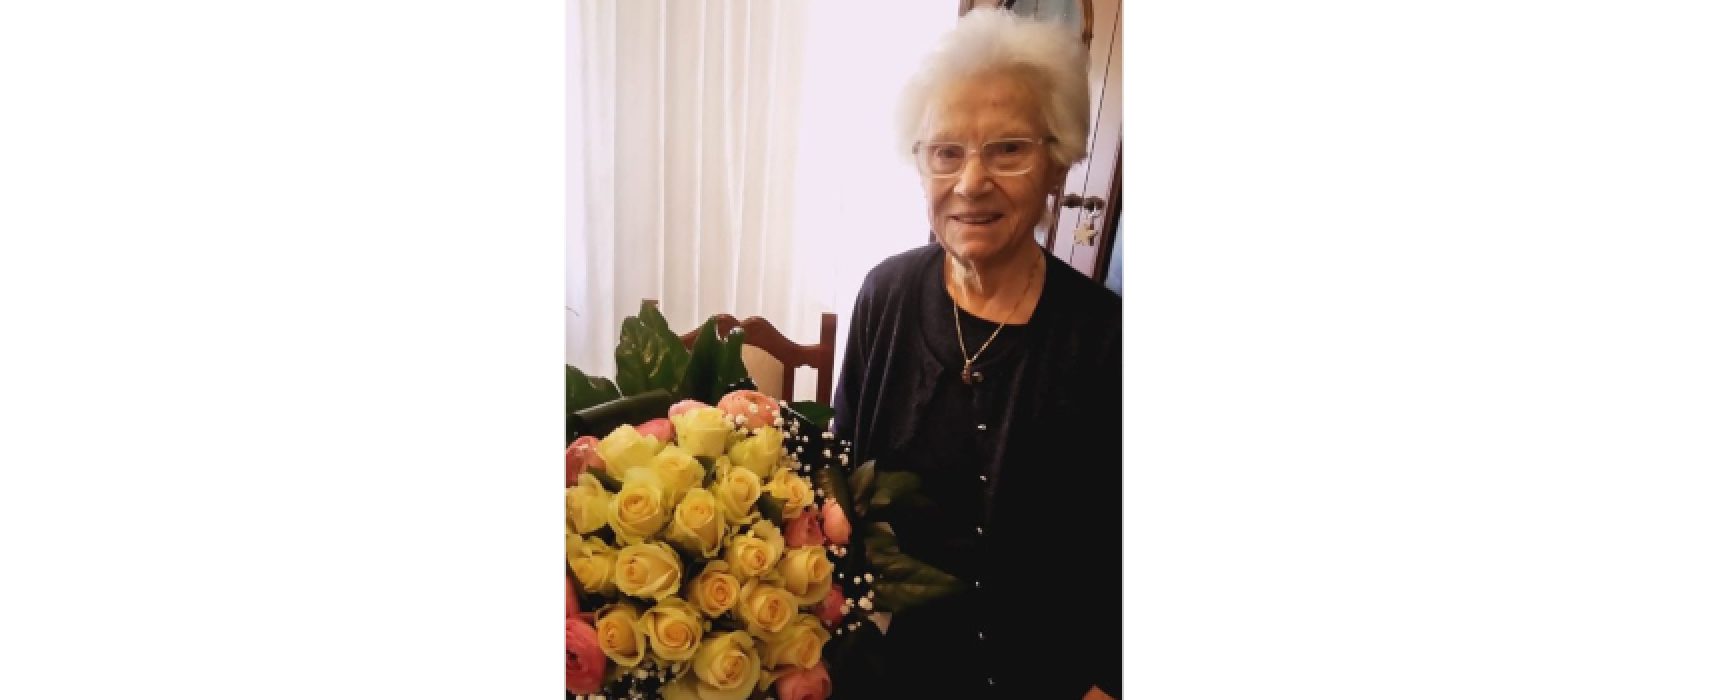 Compleanno speciale: 100 anni di nonna Grazia, gli auguri del sindaco di Bisceglie Angarano